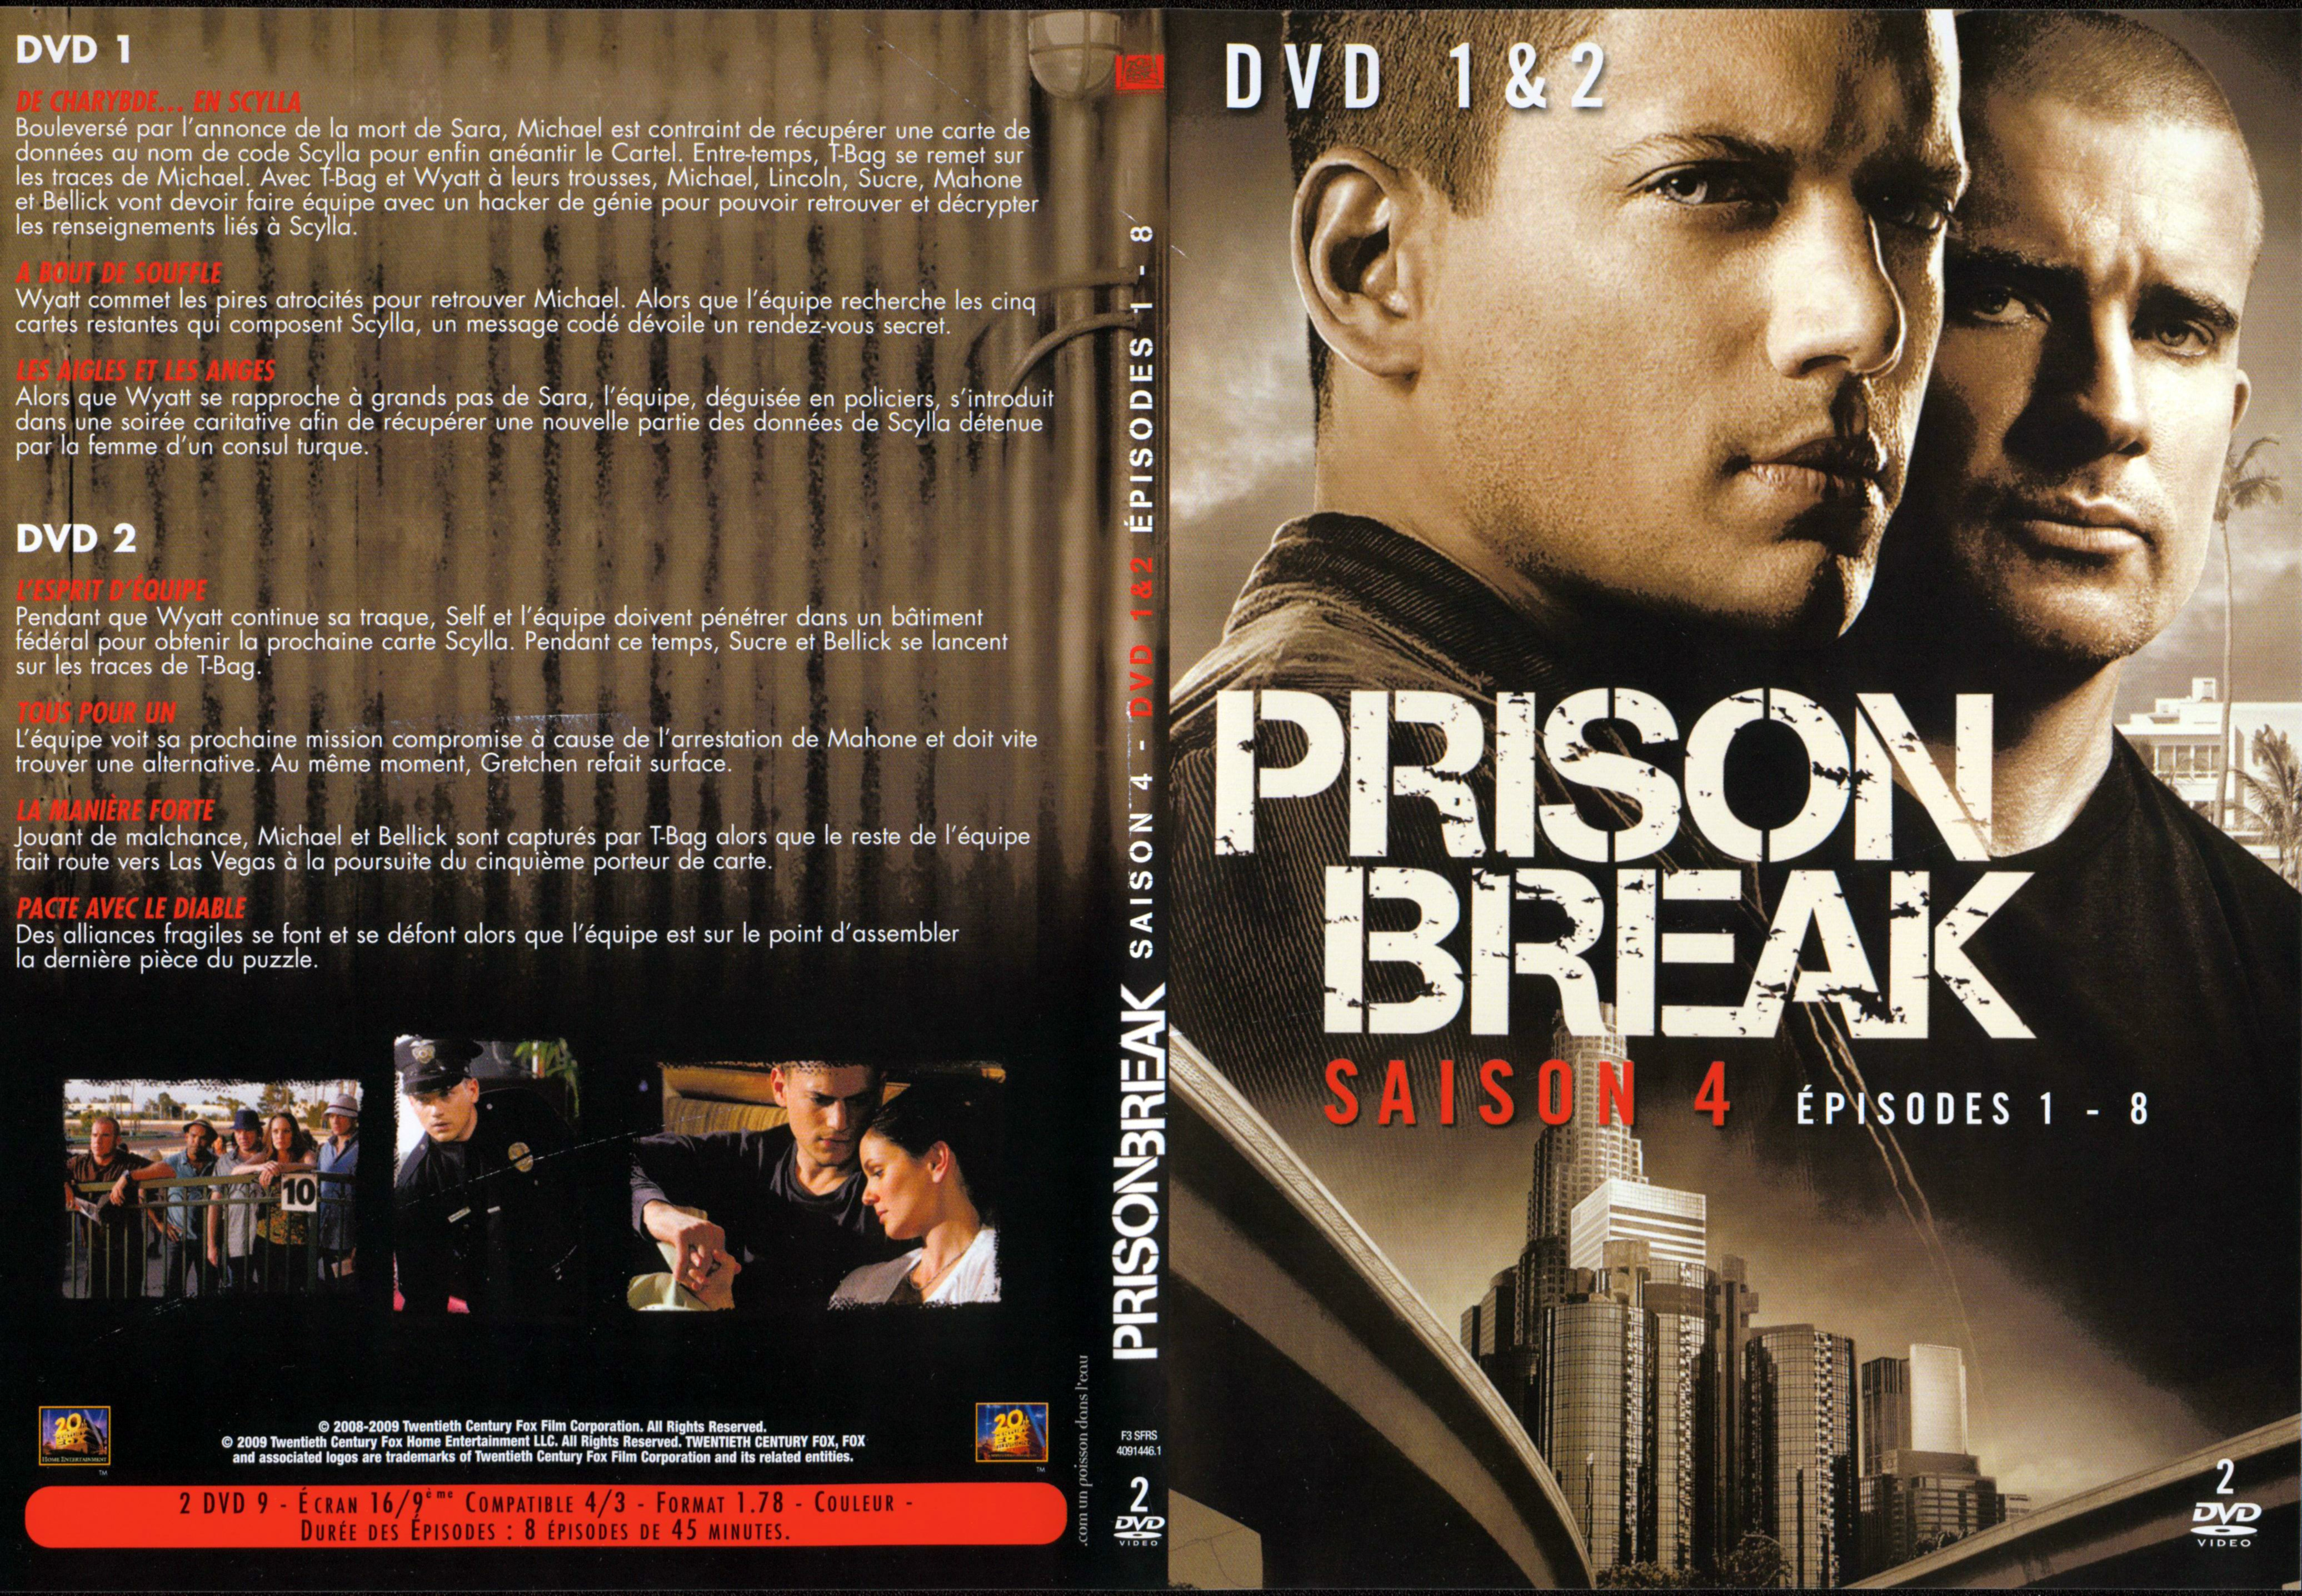 Jaquette DVD Prison break Saison 4 DVD 1